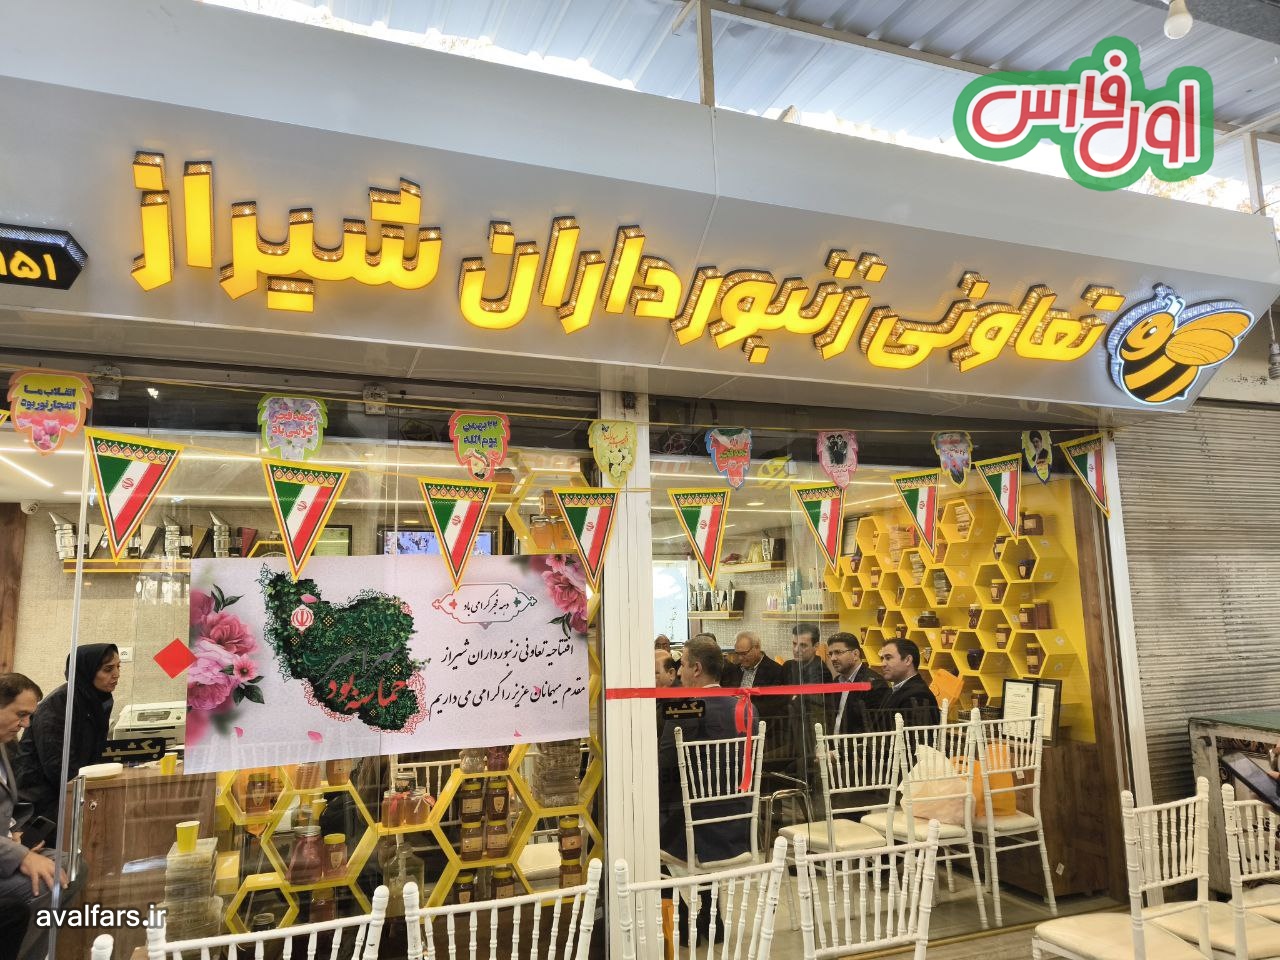 خبری خوش برای شیرازی ها: فروشگاه عسل تعاونی زنبورداران شیراز افتتاح شد [+ویدئو]